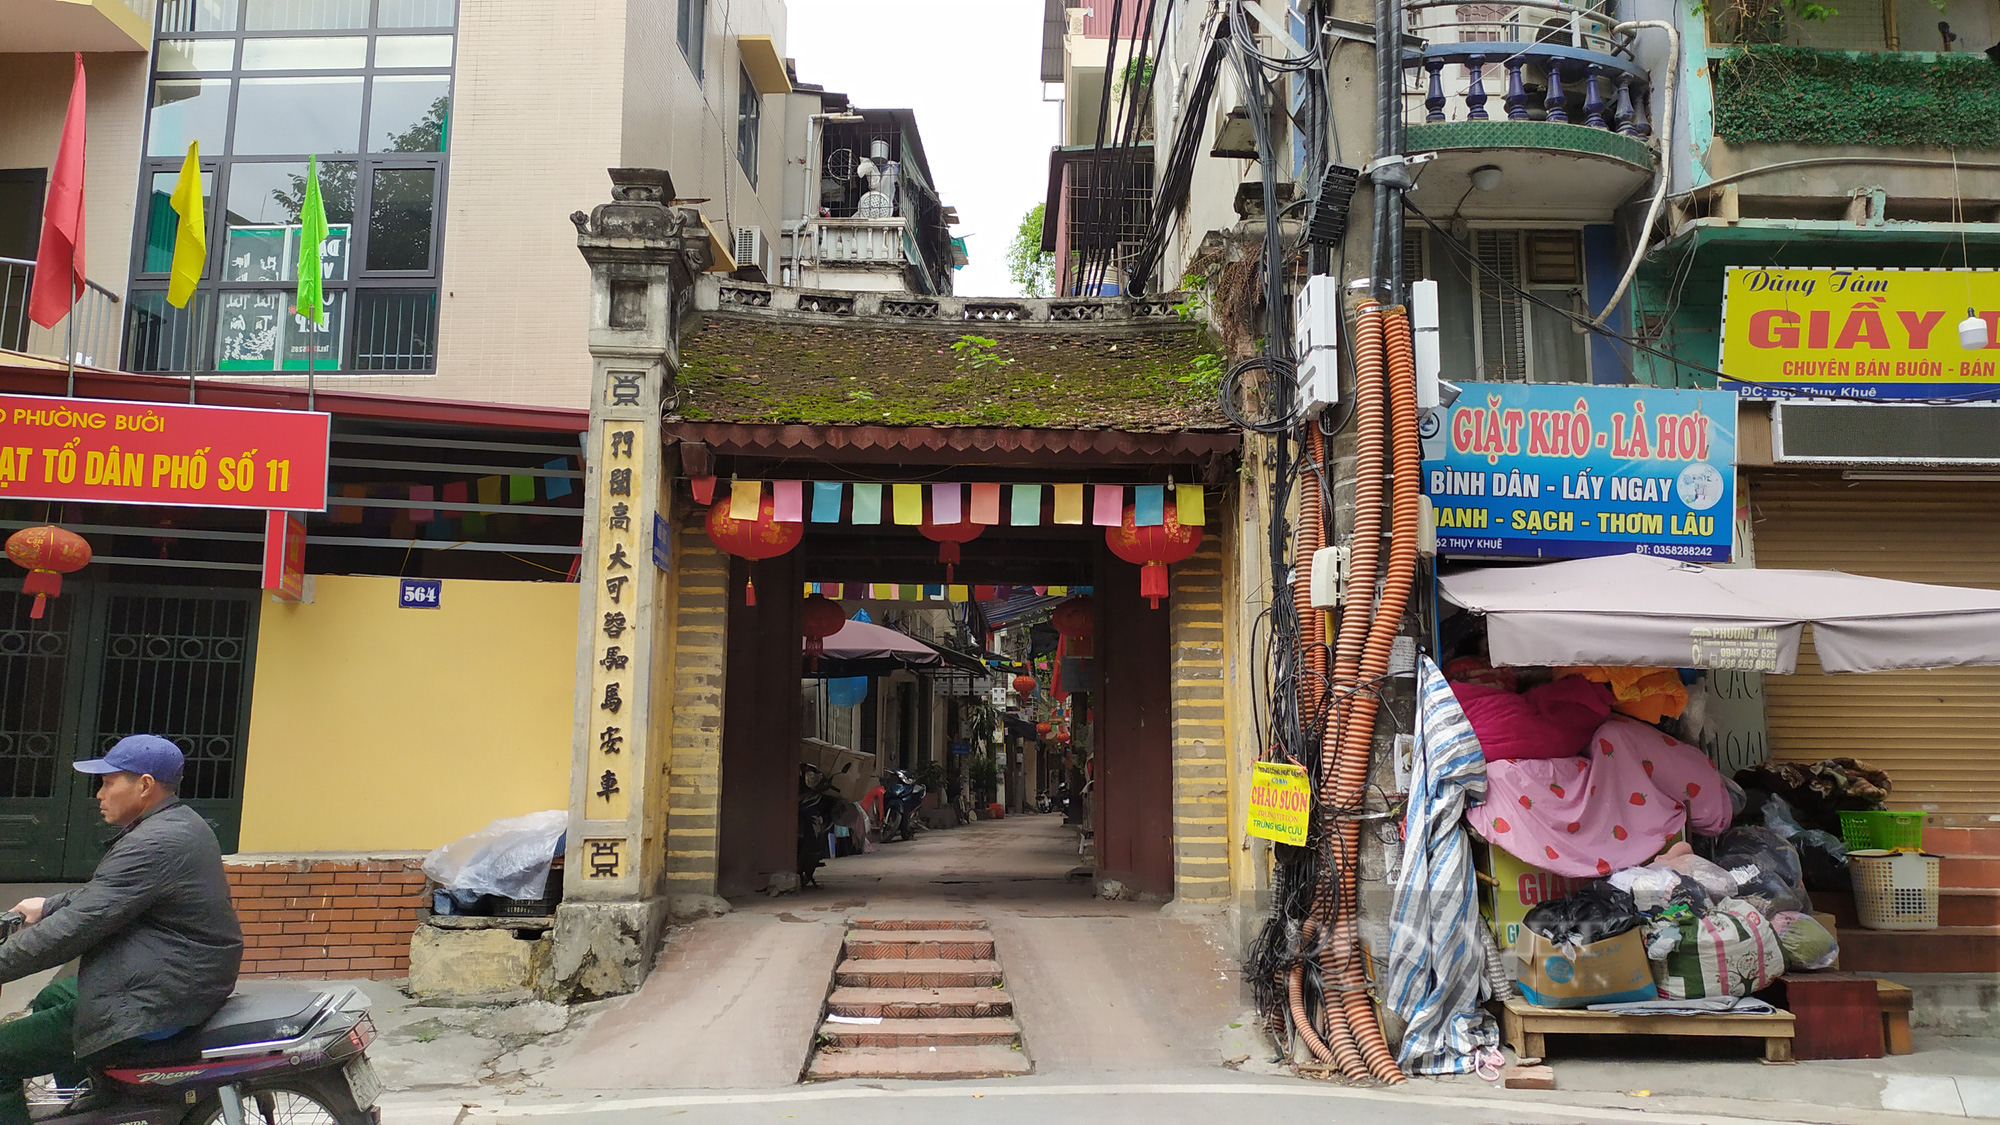 Chuyện về con phố có cổng làng cổ được ví là “đẹp nhất kinh kỳ” ở Hà Nội - Ảnh 1.